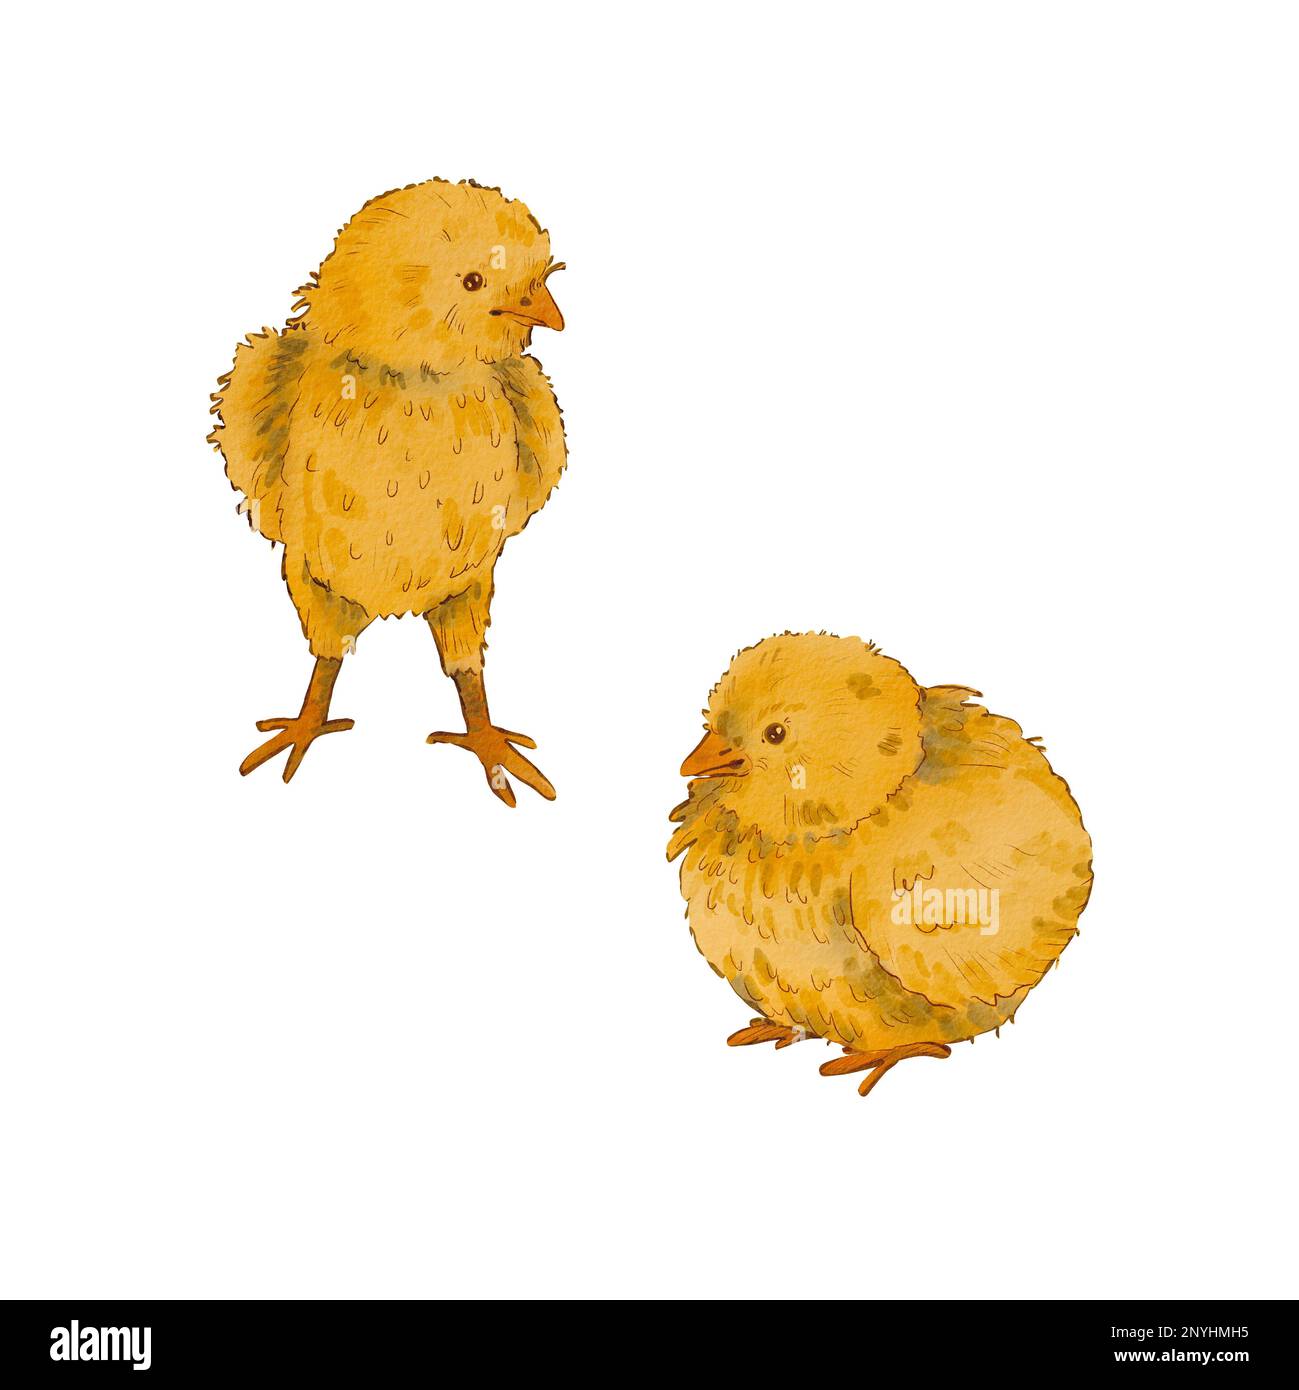 Un ensemble de deux poulets isolés sur un fond blanc. Illustration aquarelle d'un poulet jaune nouveau-né. Motif Pâques. Poussin doux. Convient pour po Banque D'Images